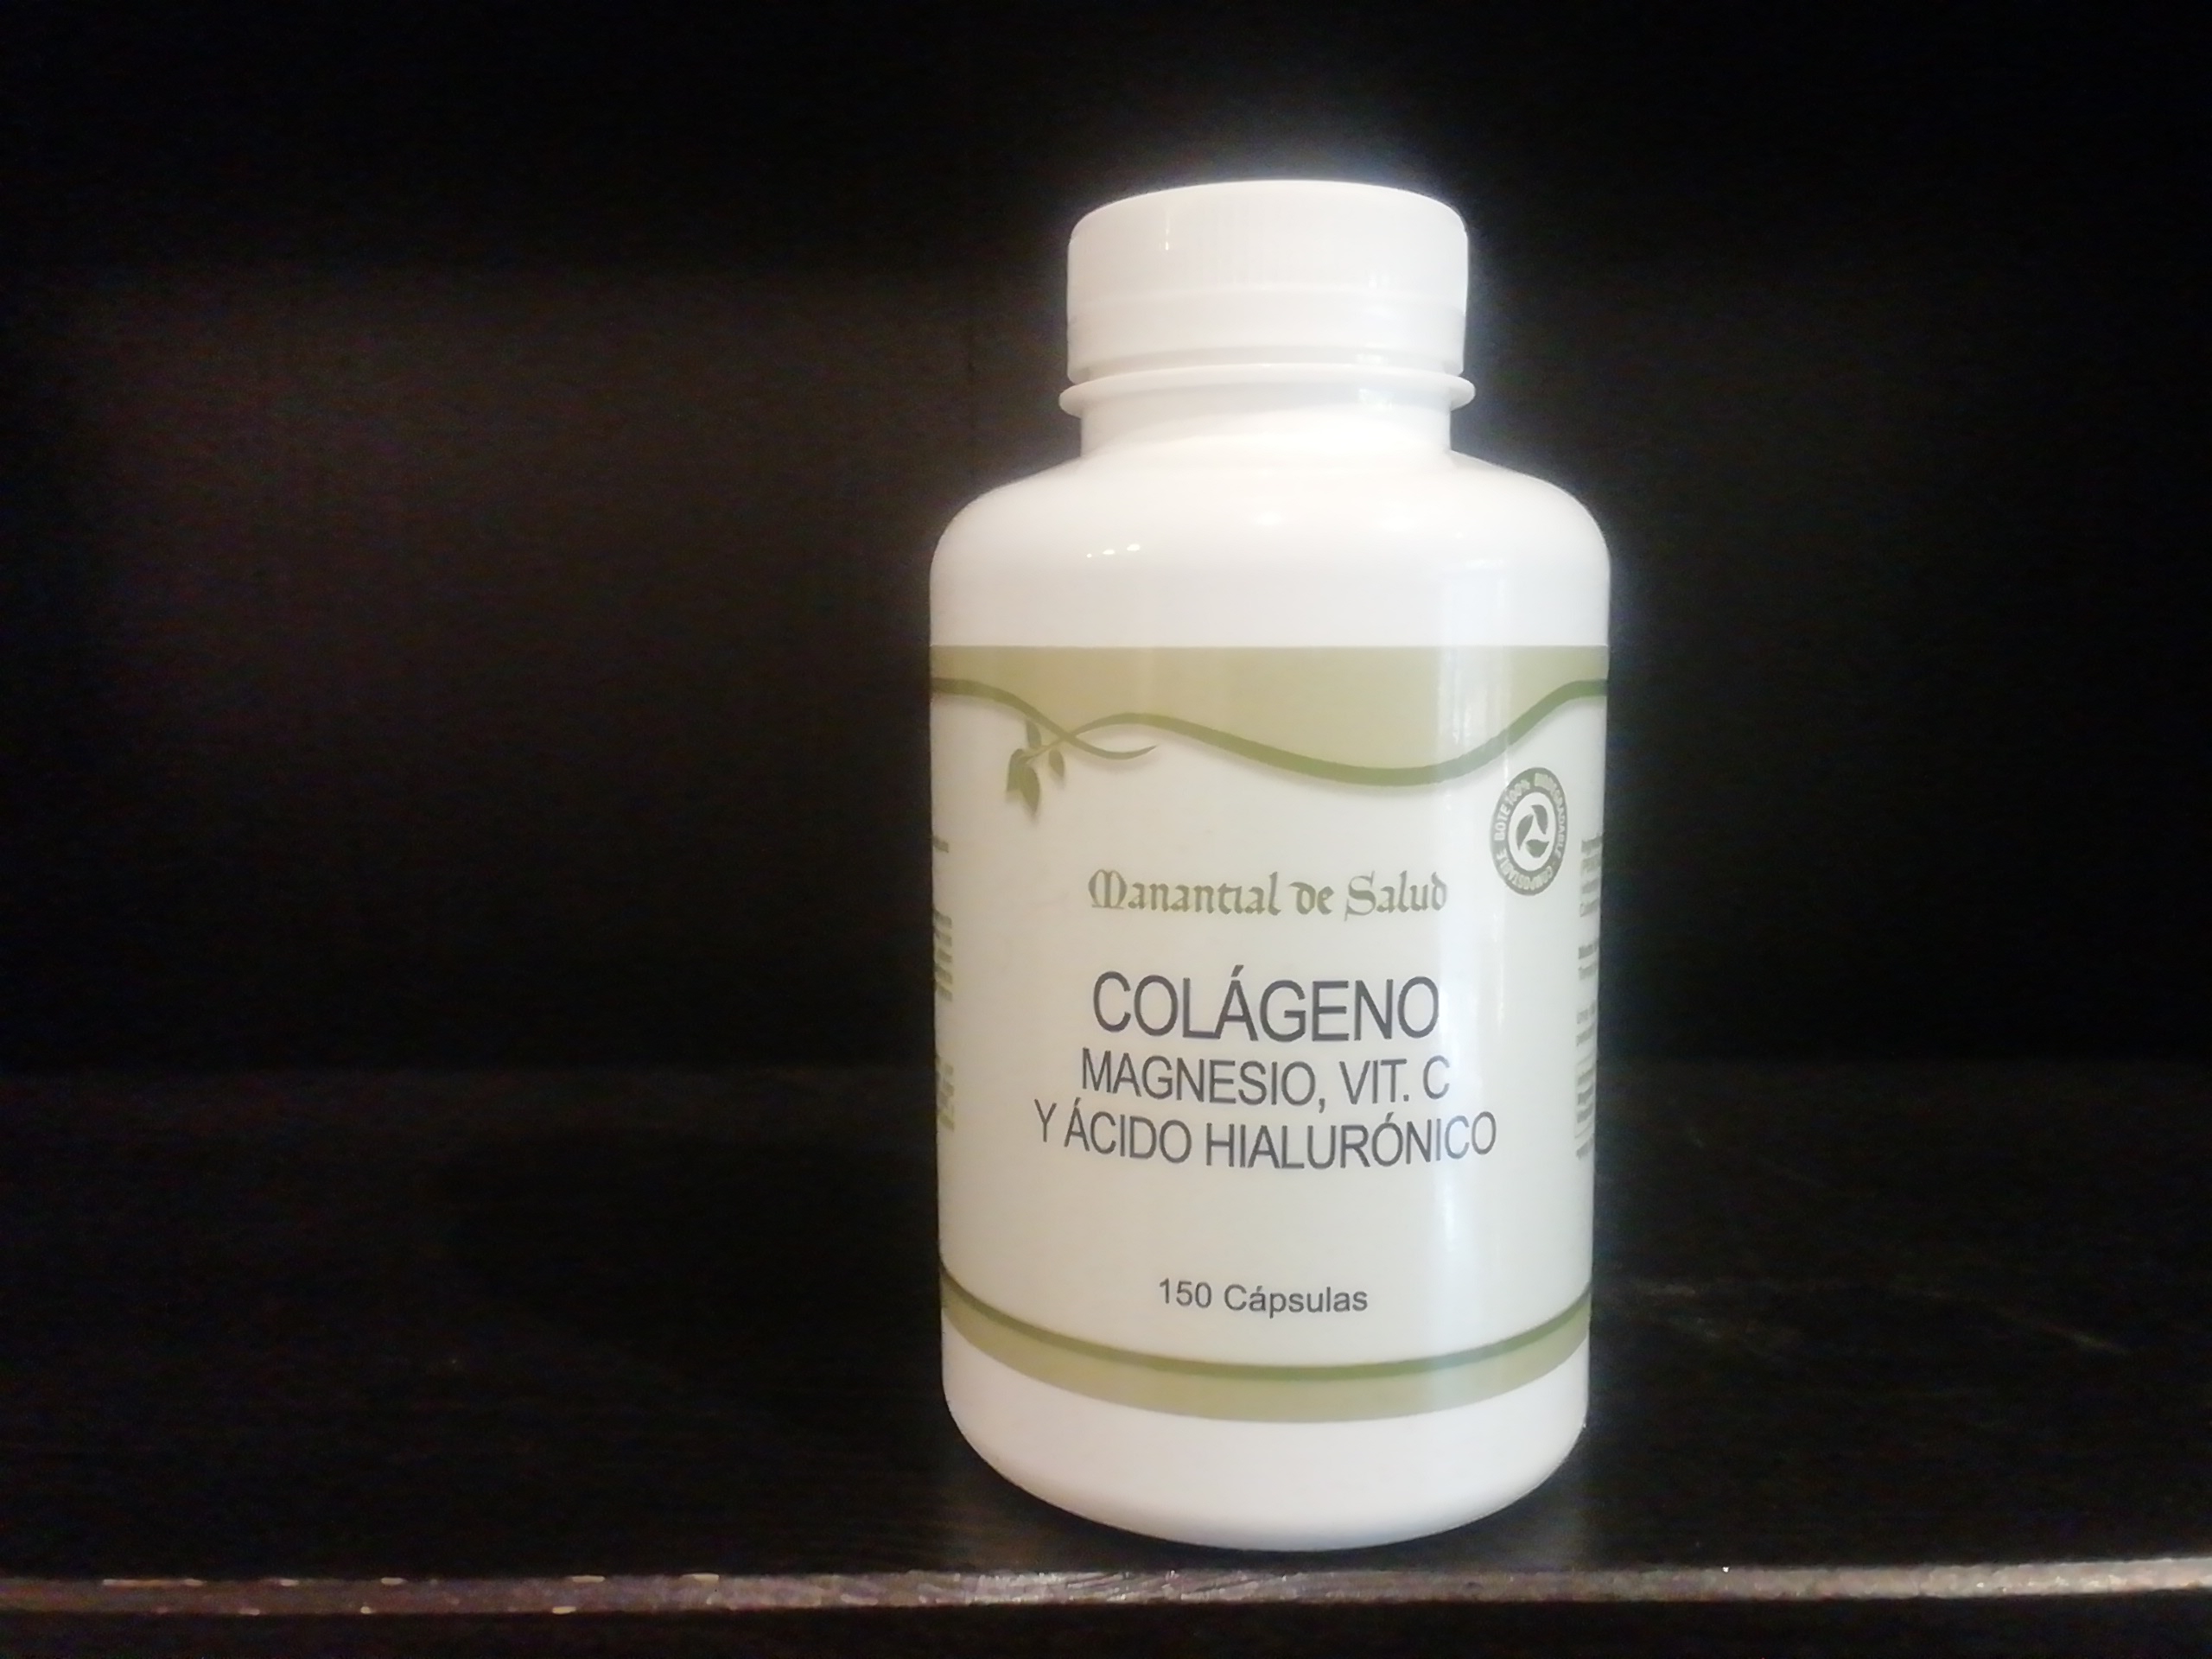 Colágeno, Magneso, Vit C y Ácido hialurónico 150caps Manantial de salud 